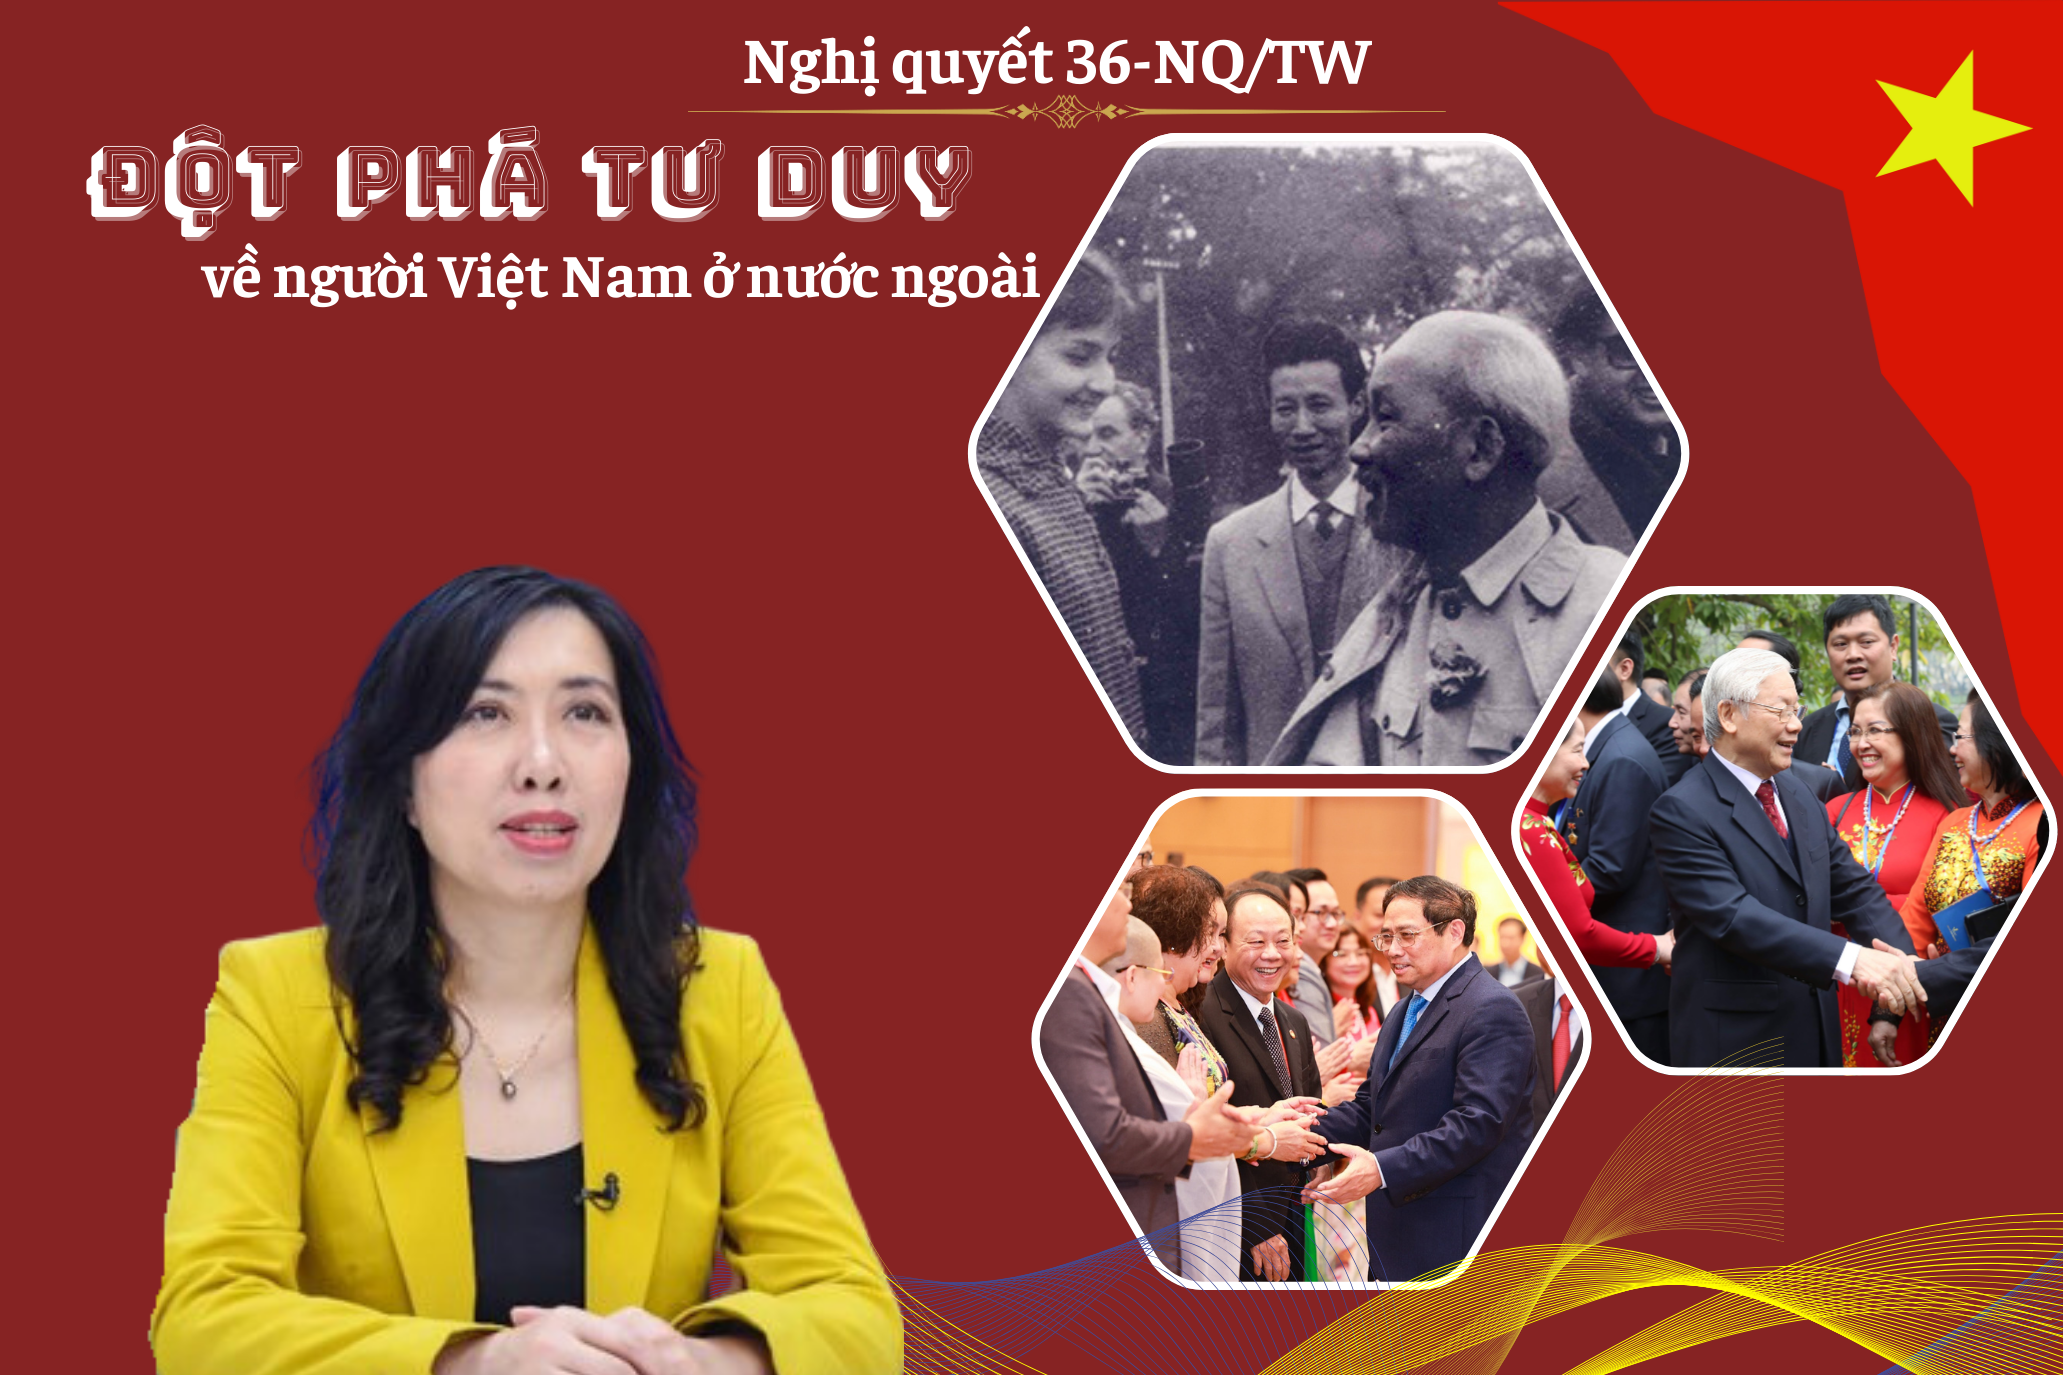 Đột phá tư duy về người Việt Nam ở nước ngoài